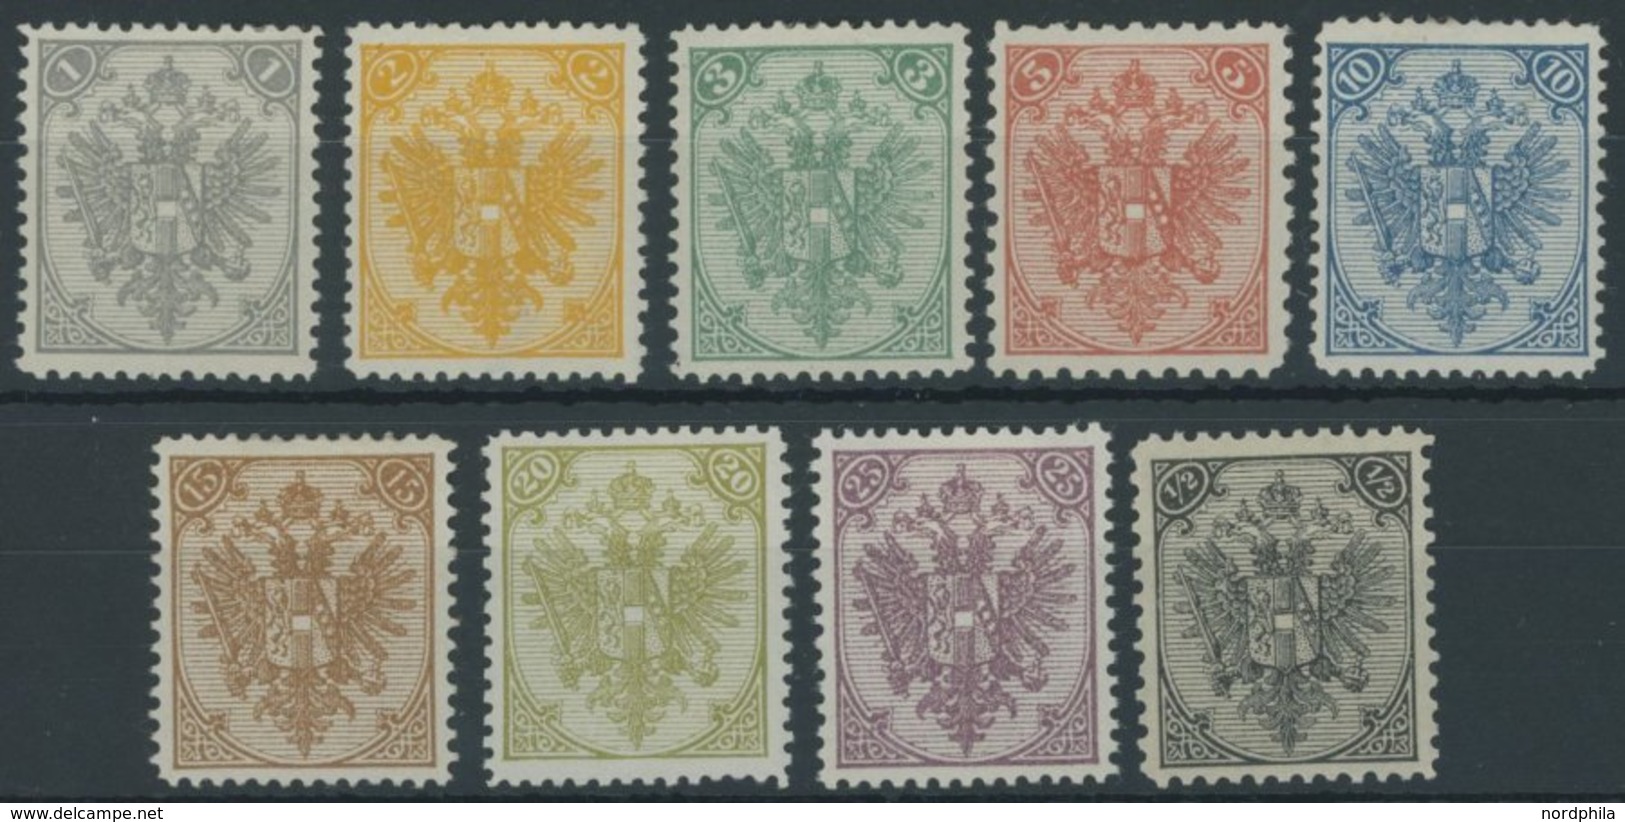 BOSNIEN UND HERZEGOWINA 1-9II *,** , 1895, Buchdruck, Prachtsatz - Bosnie-Herzegovine